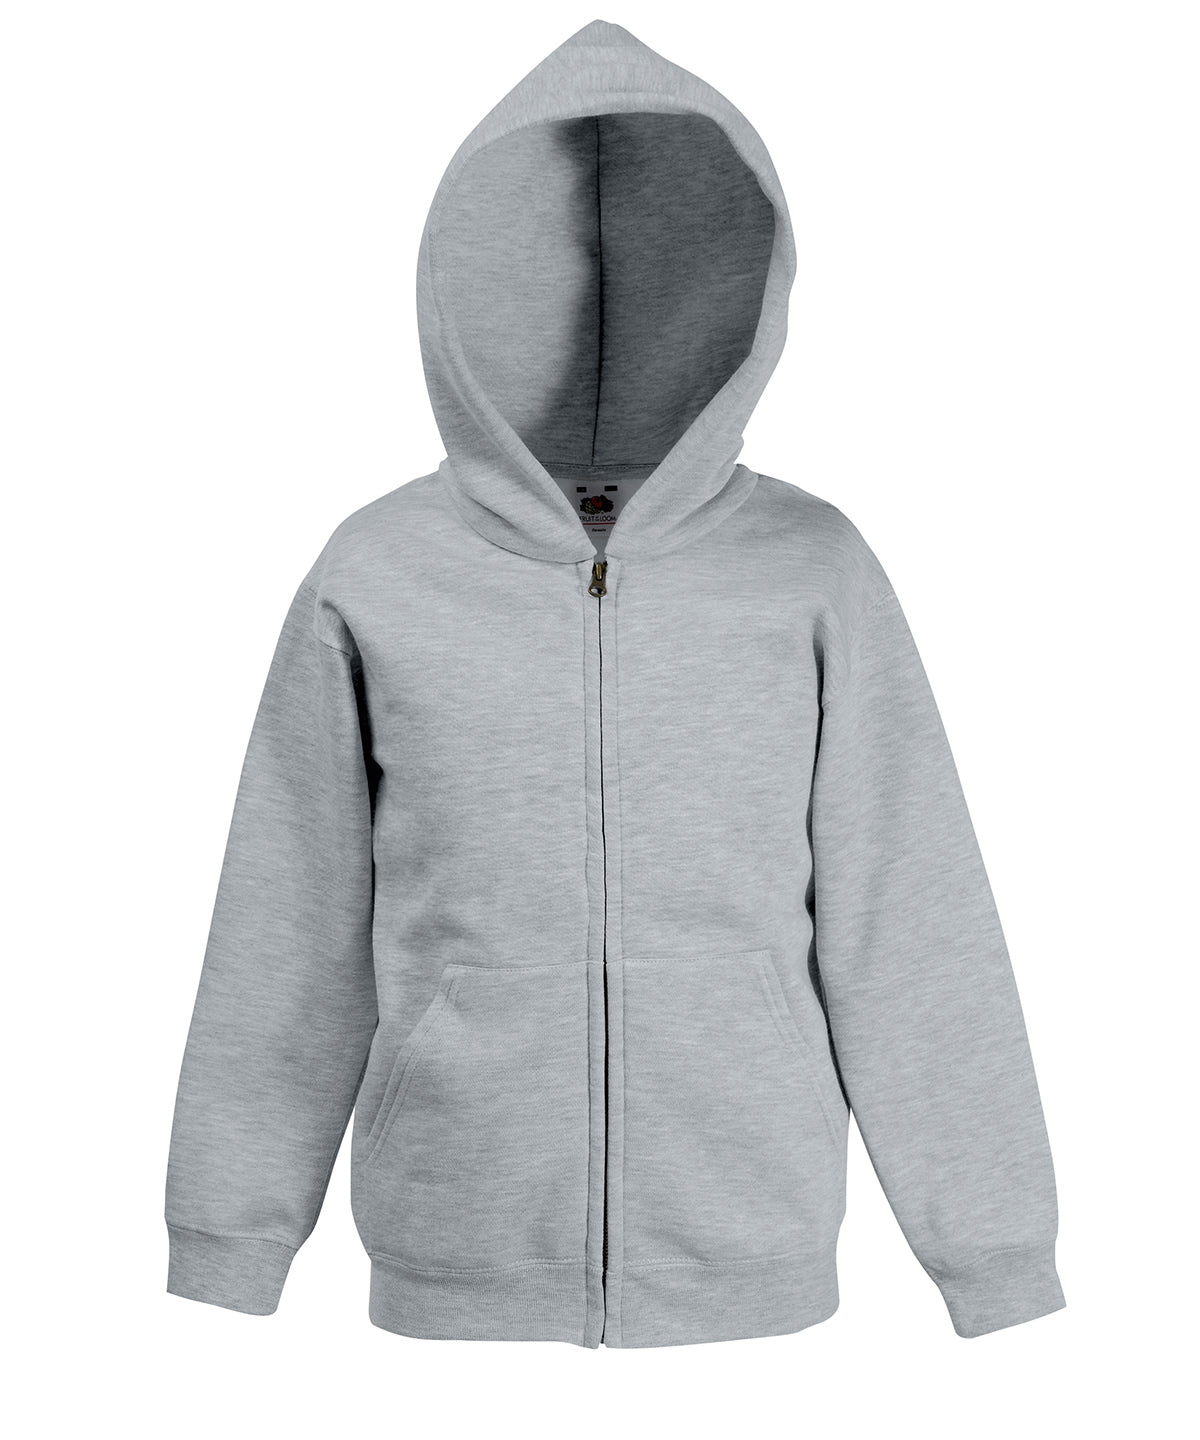 Personalised Hoodies - Black Fruit of the Loom Kids premium hooded sweatshirt jacket